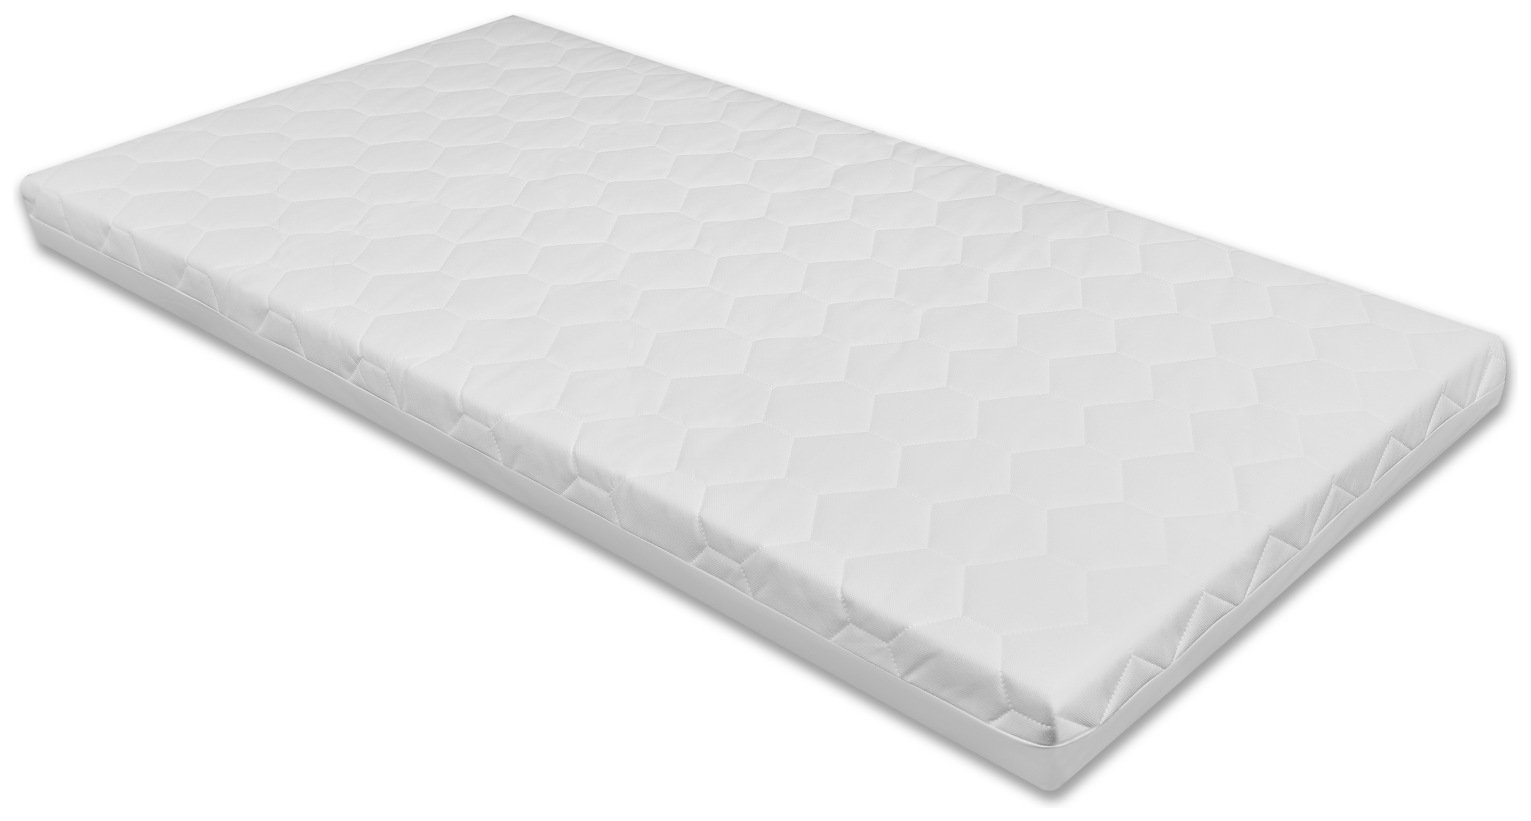 mamas and papas foam mattress